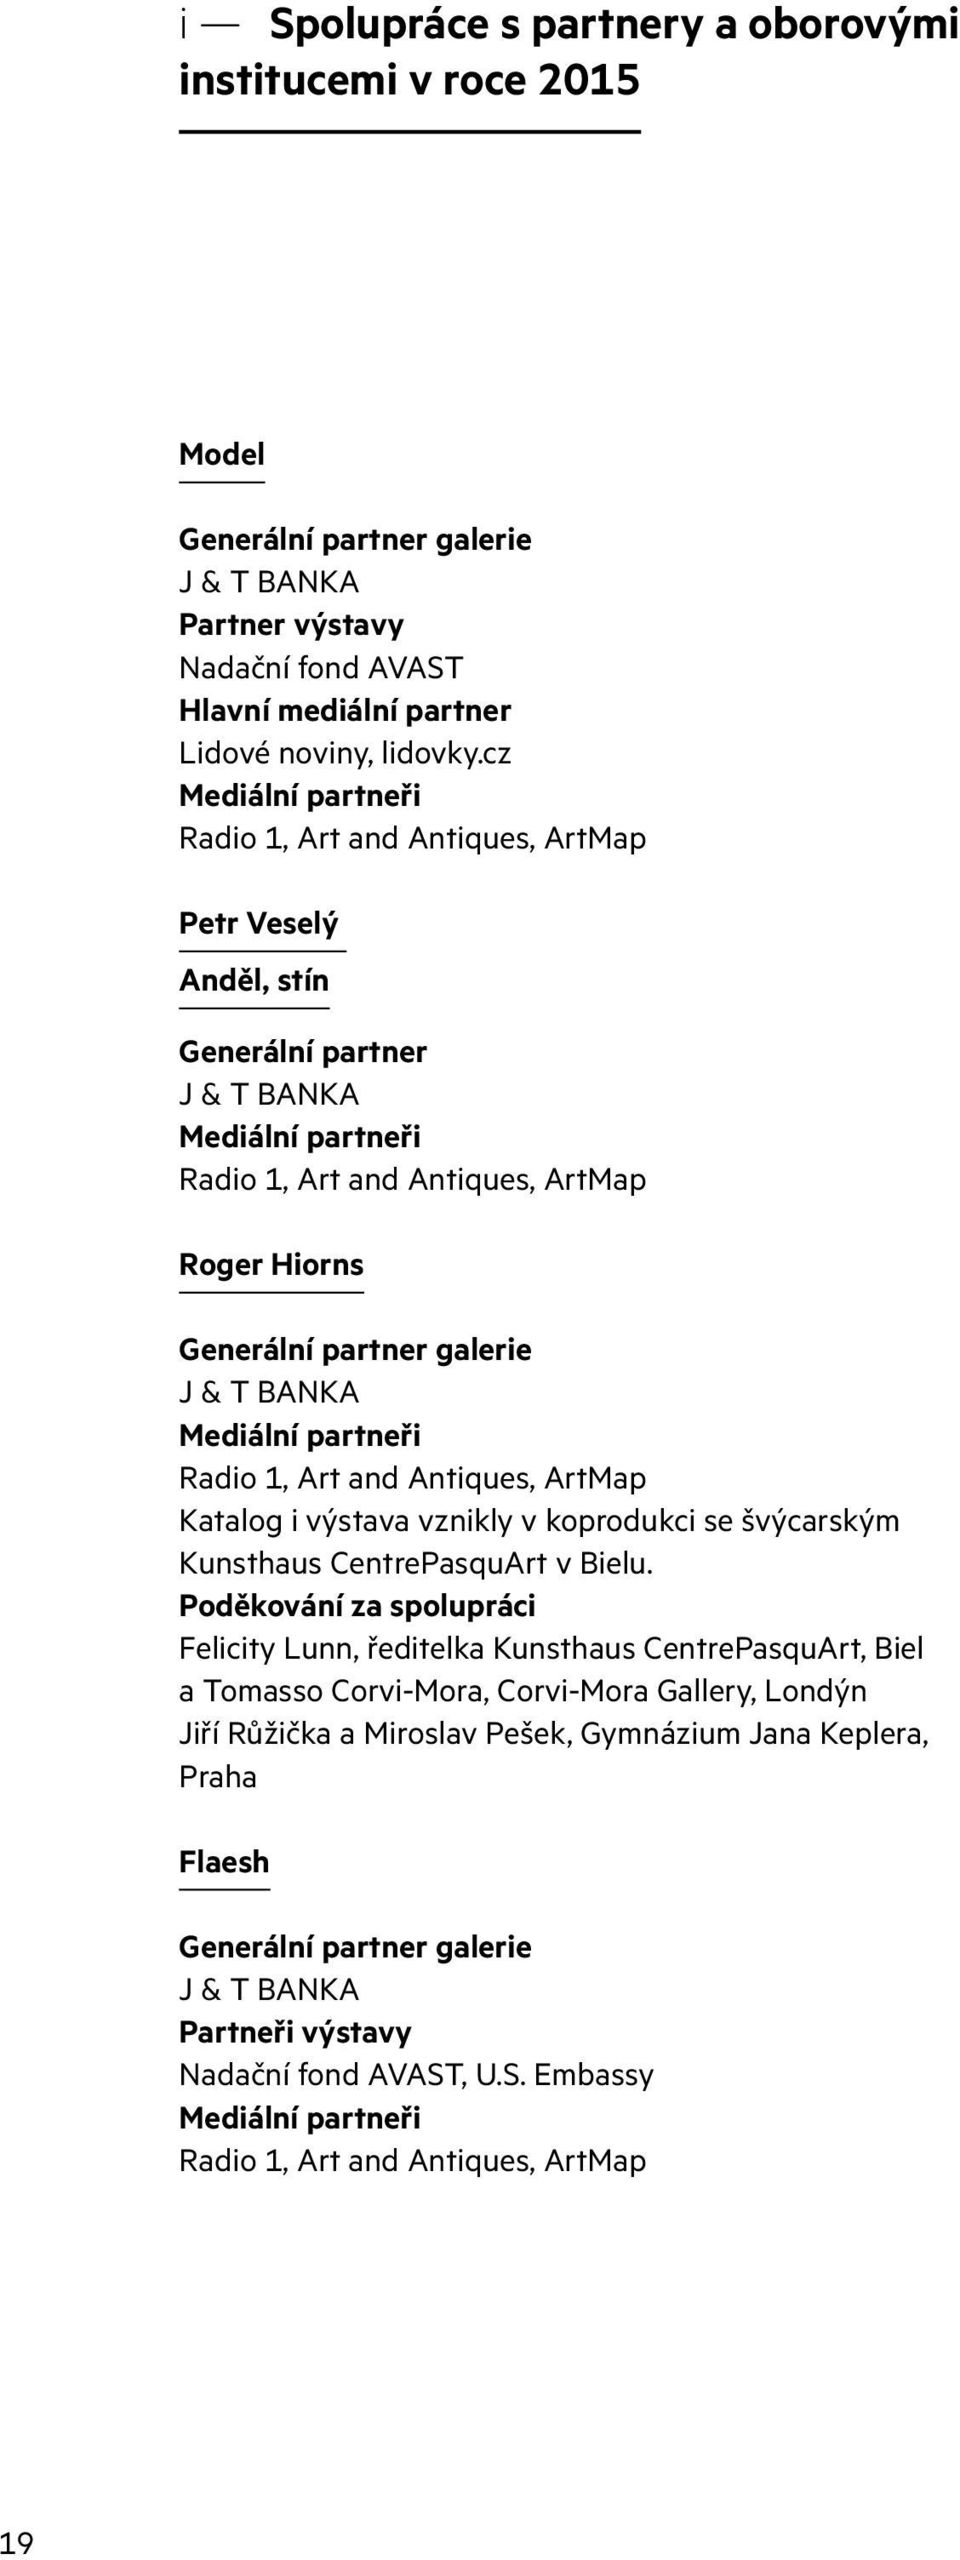 J & T BANKA Mediální partneři Radio 1, Art and Antiques, ArtMap Katalog i výstava vznikly v koprodukci se švýcarským Kunsthaus CentrePasquArt v Bielu.